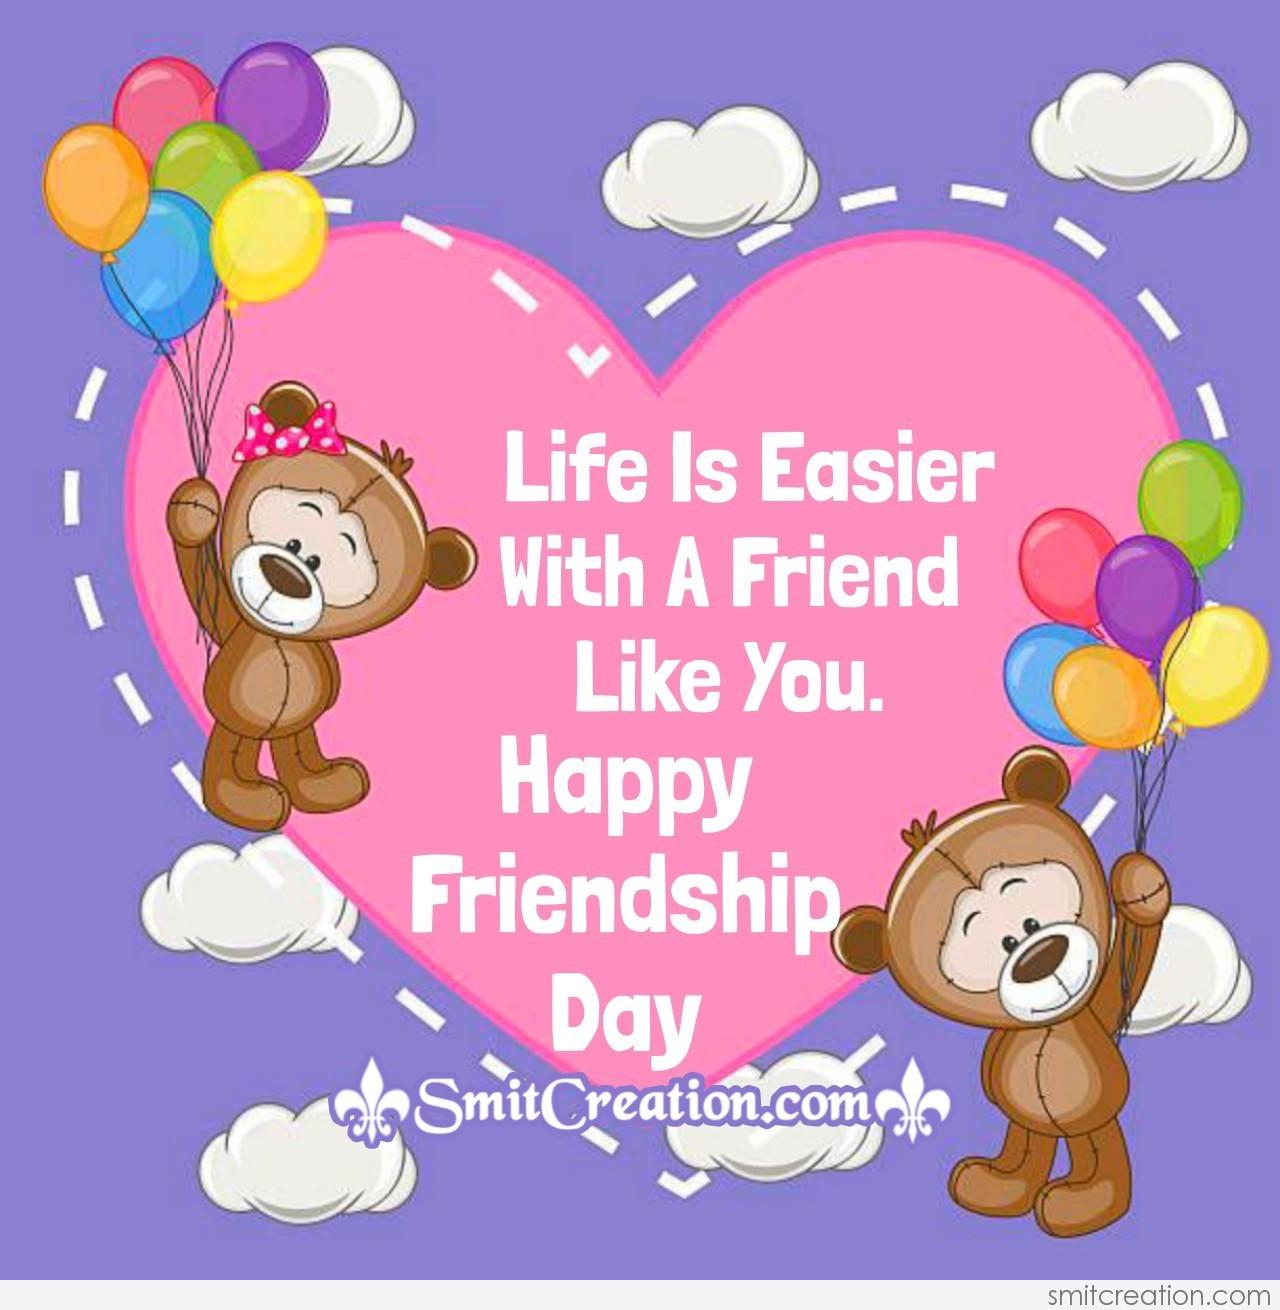 Happy Friendship Day Dear Friend - SmitCreation.com